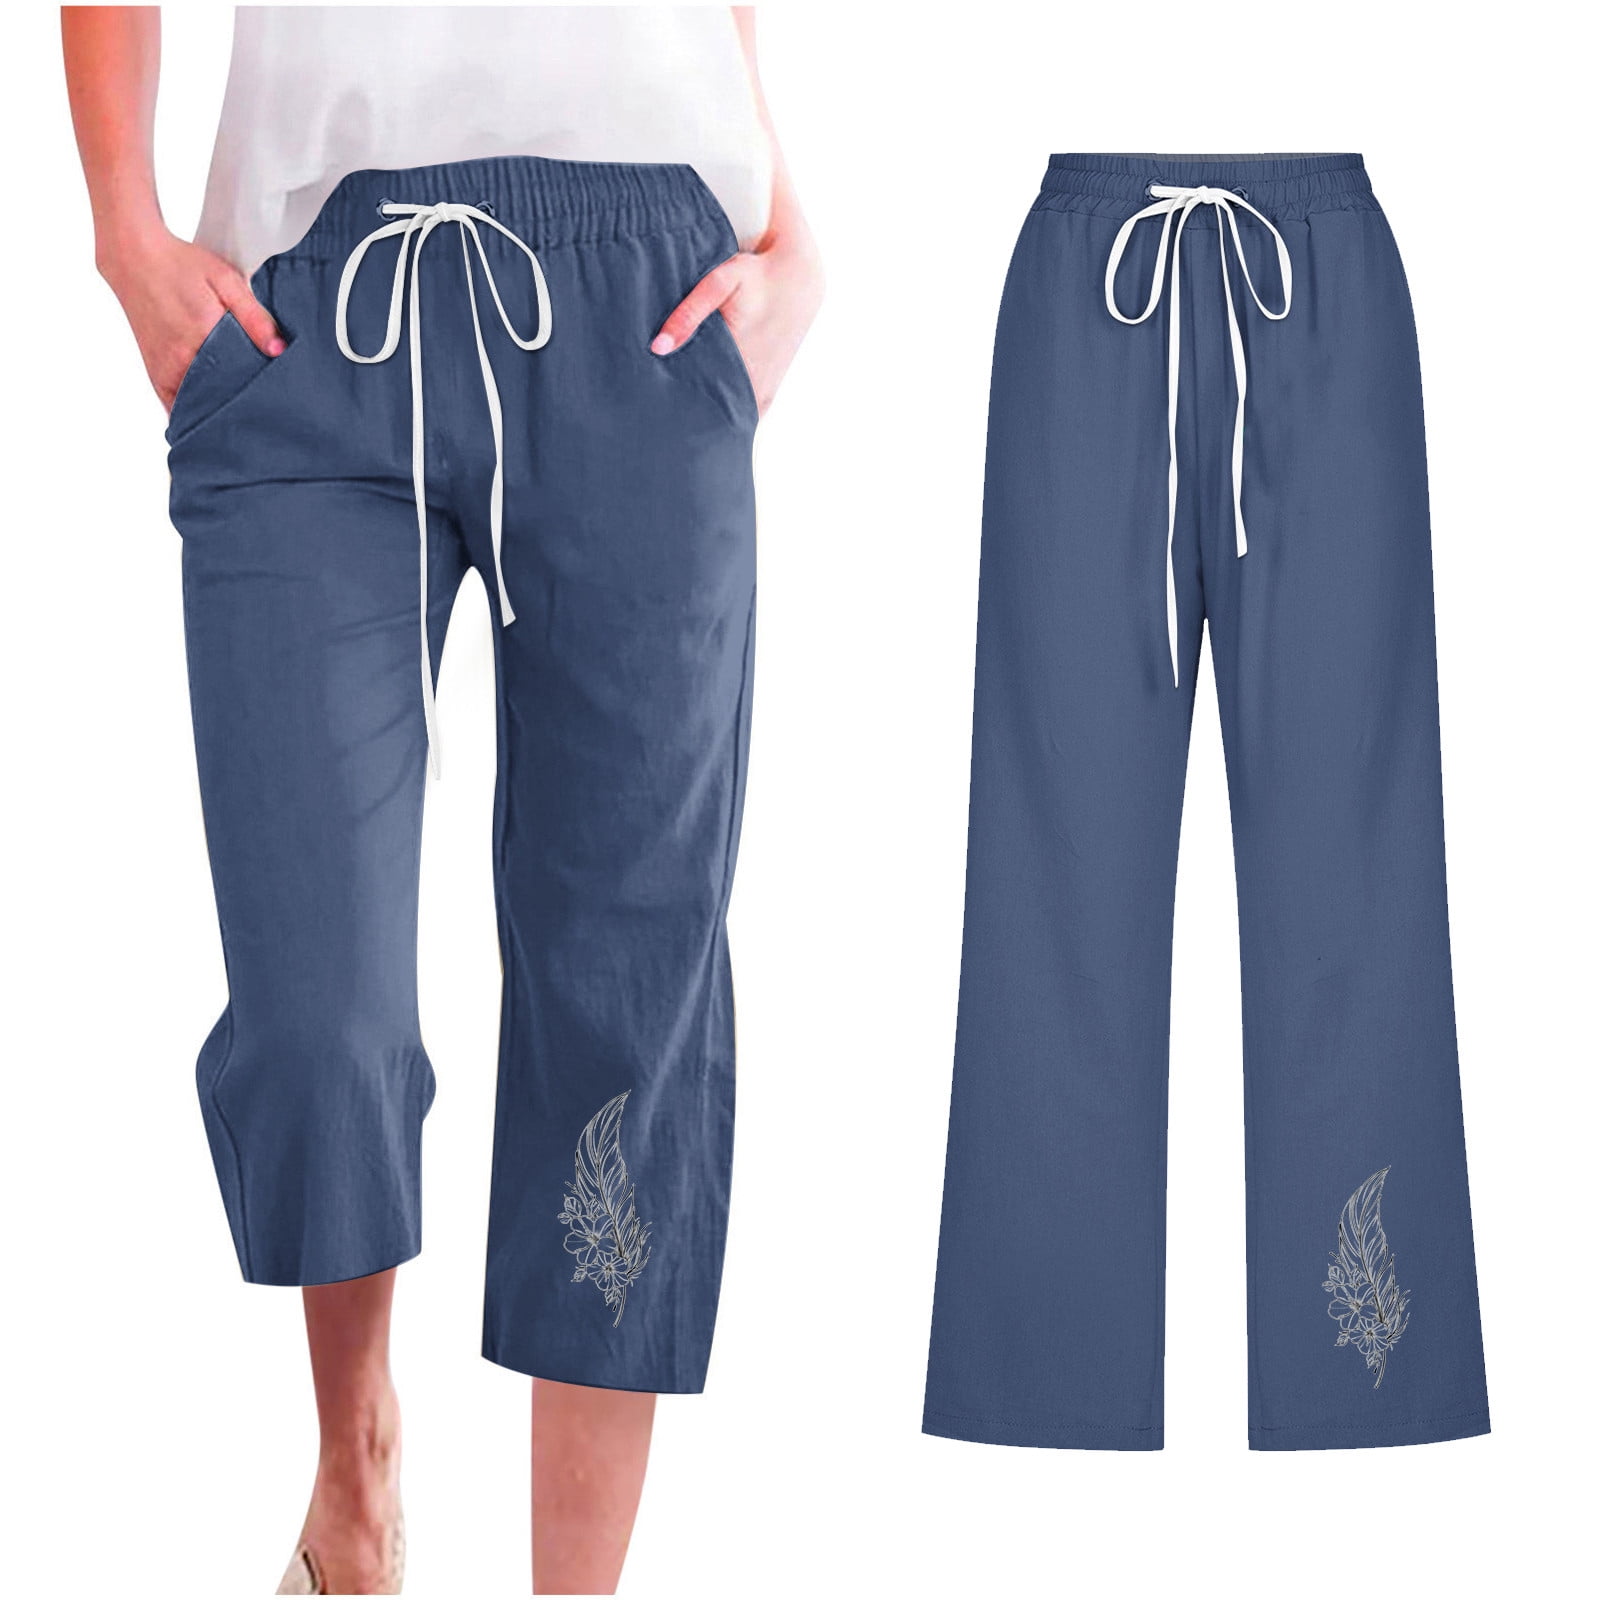 Capris Pants For Women Casual Summer Solid Color Cotton Linen 3/4 Pants ...